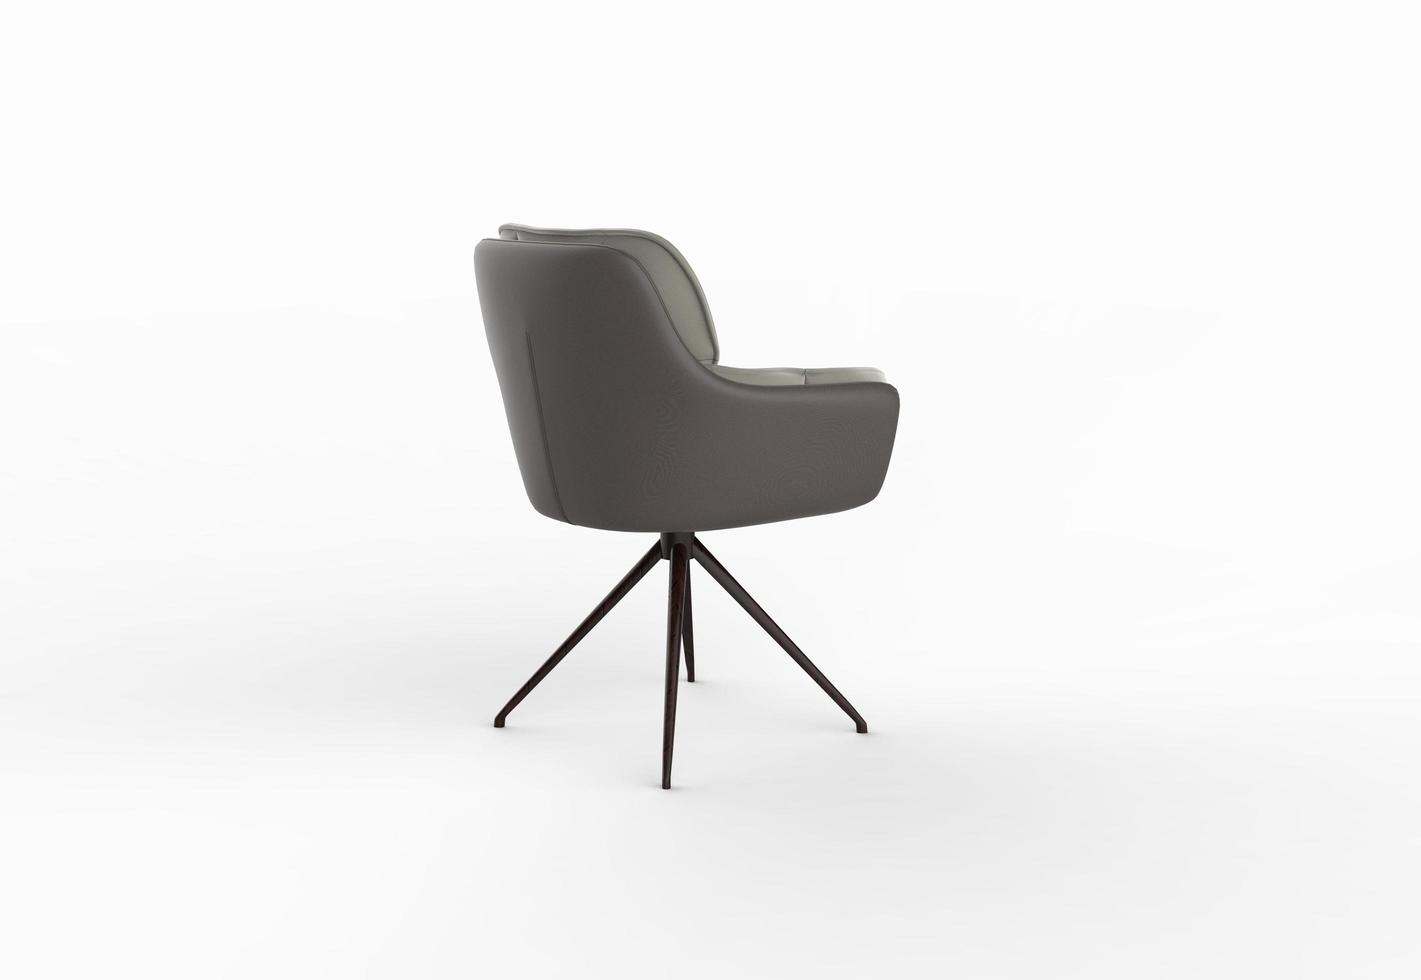 isolierter stuhl auf weißem hintergrund, möbelinnenarchitekturfoto. moderner grauer Stuhl. foto